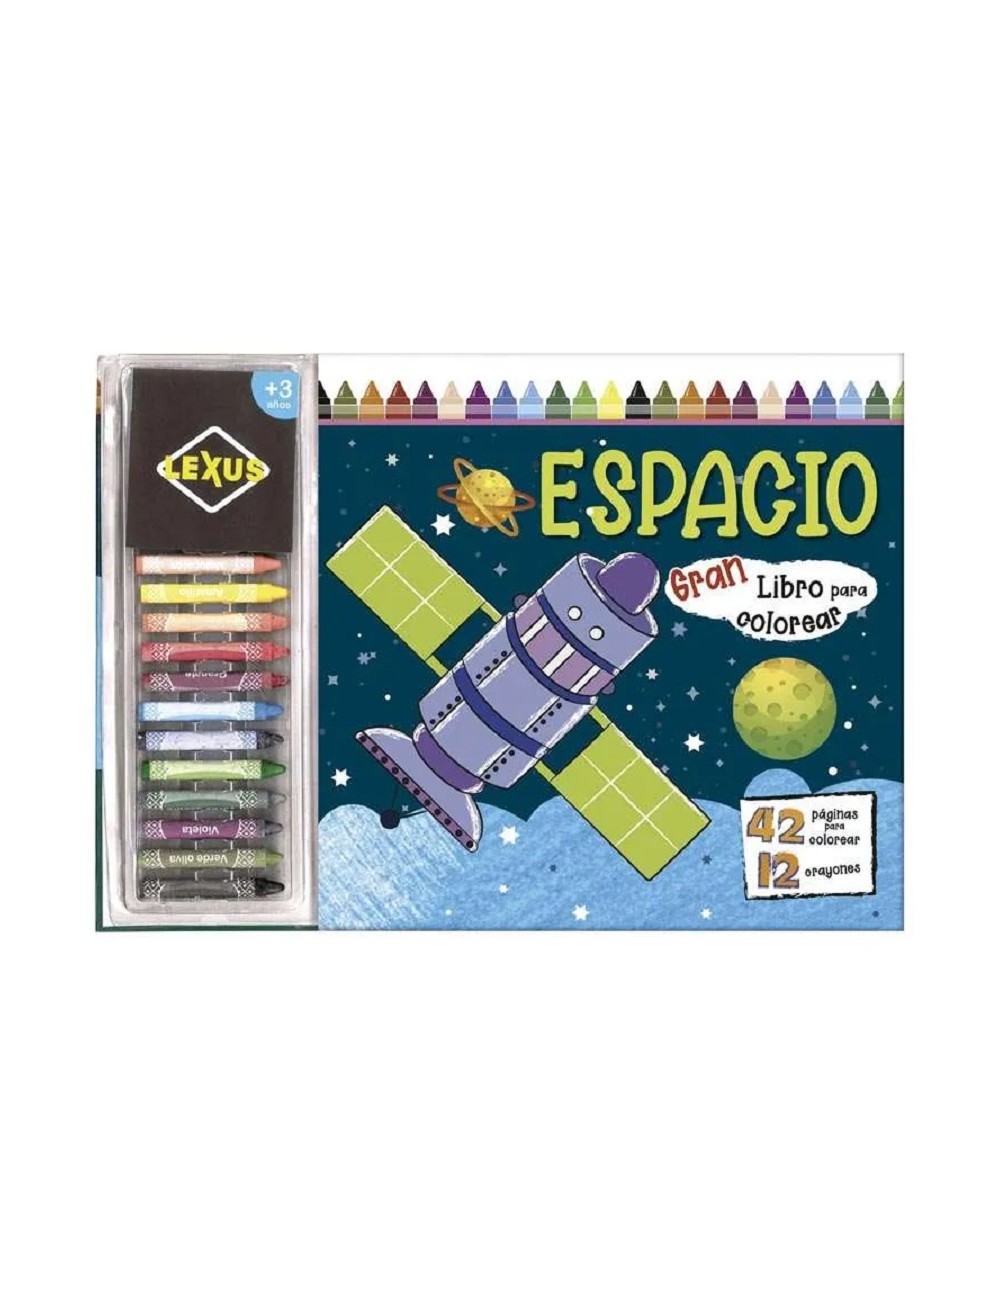 Gran Libro Para Colorear: Espacio + 12 Crayones